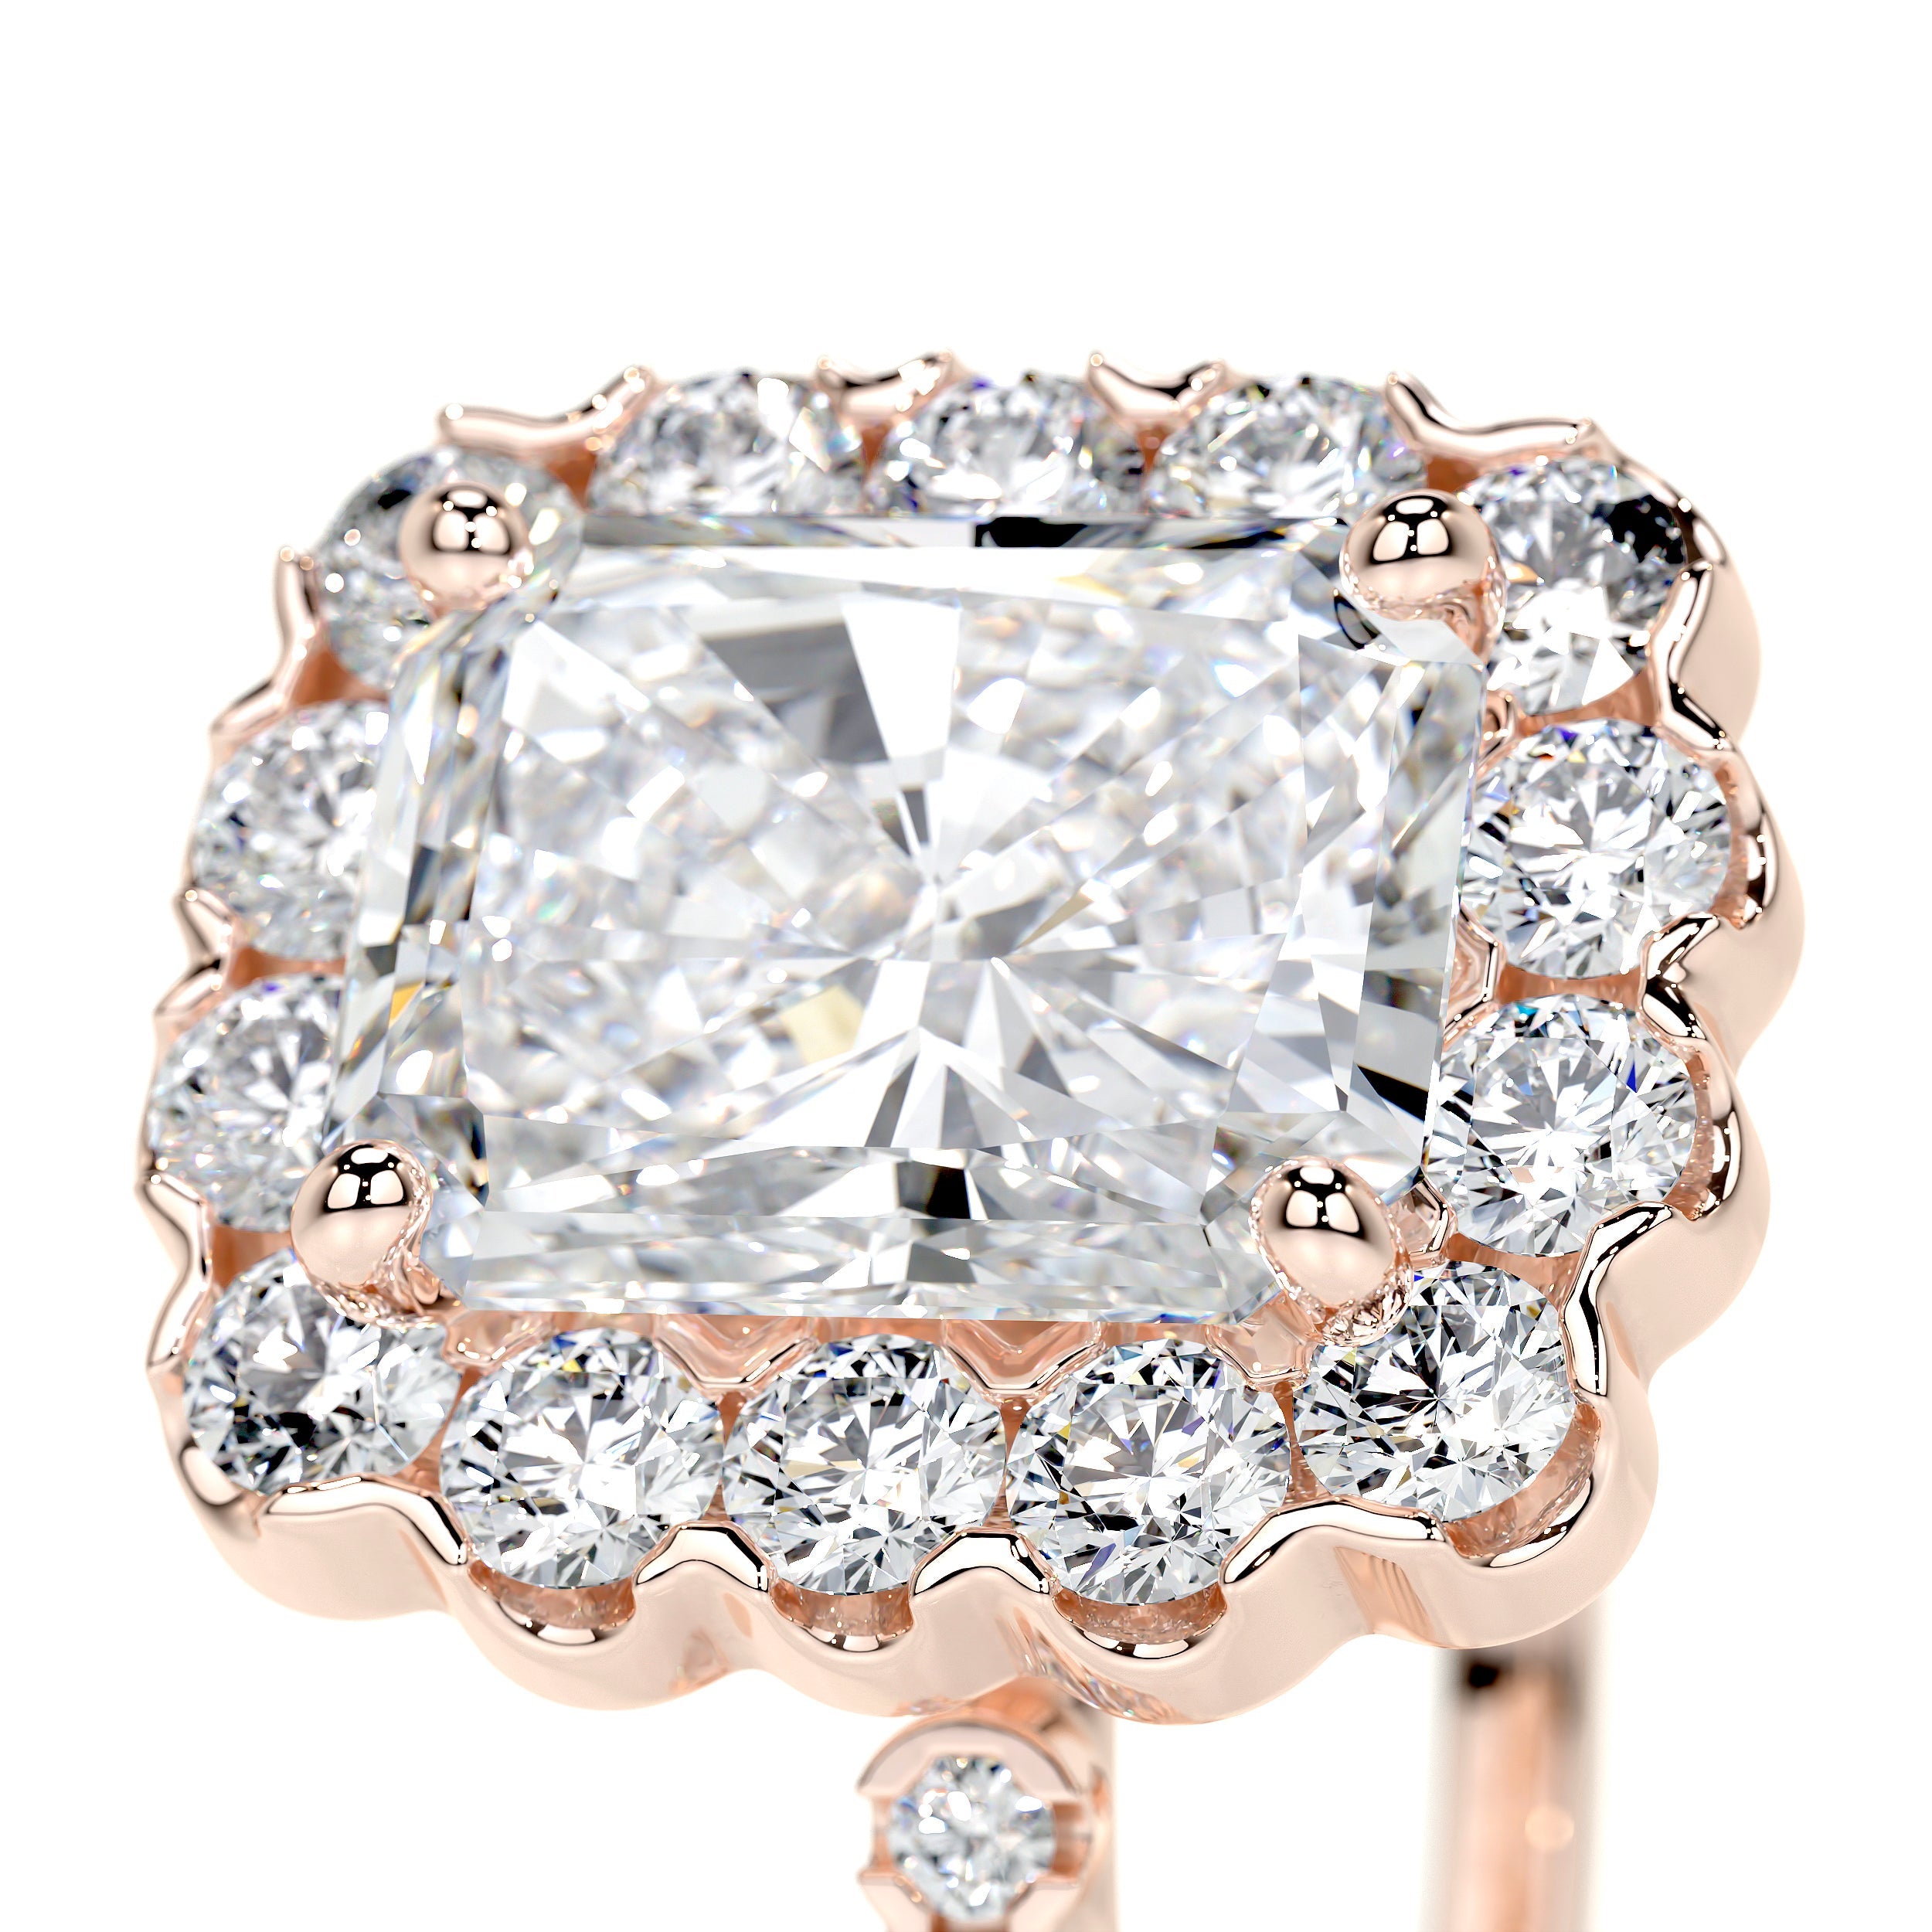 Sherry Lab Grown Diamond Ring   (2.5 Carat) -14K Rose Gold